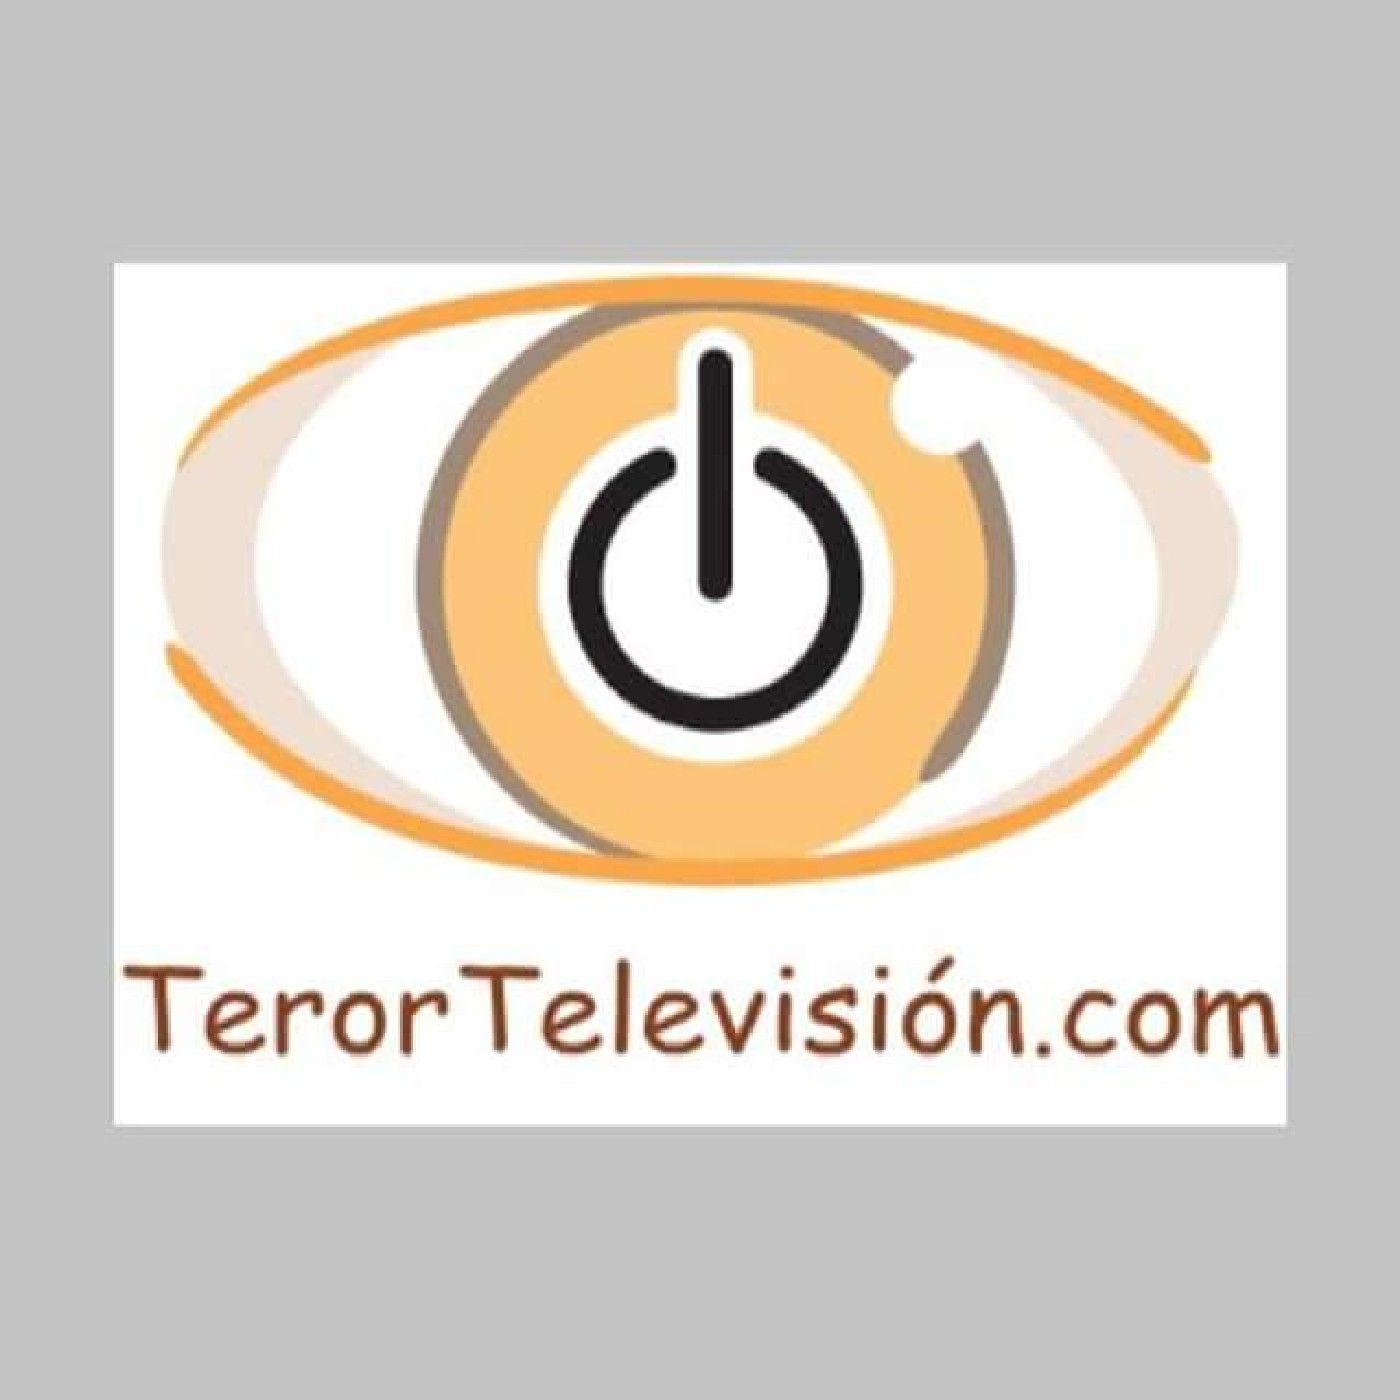 Teror Television. Com